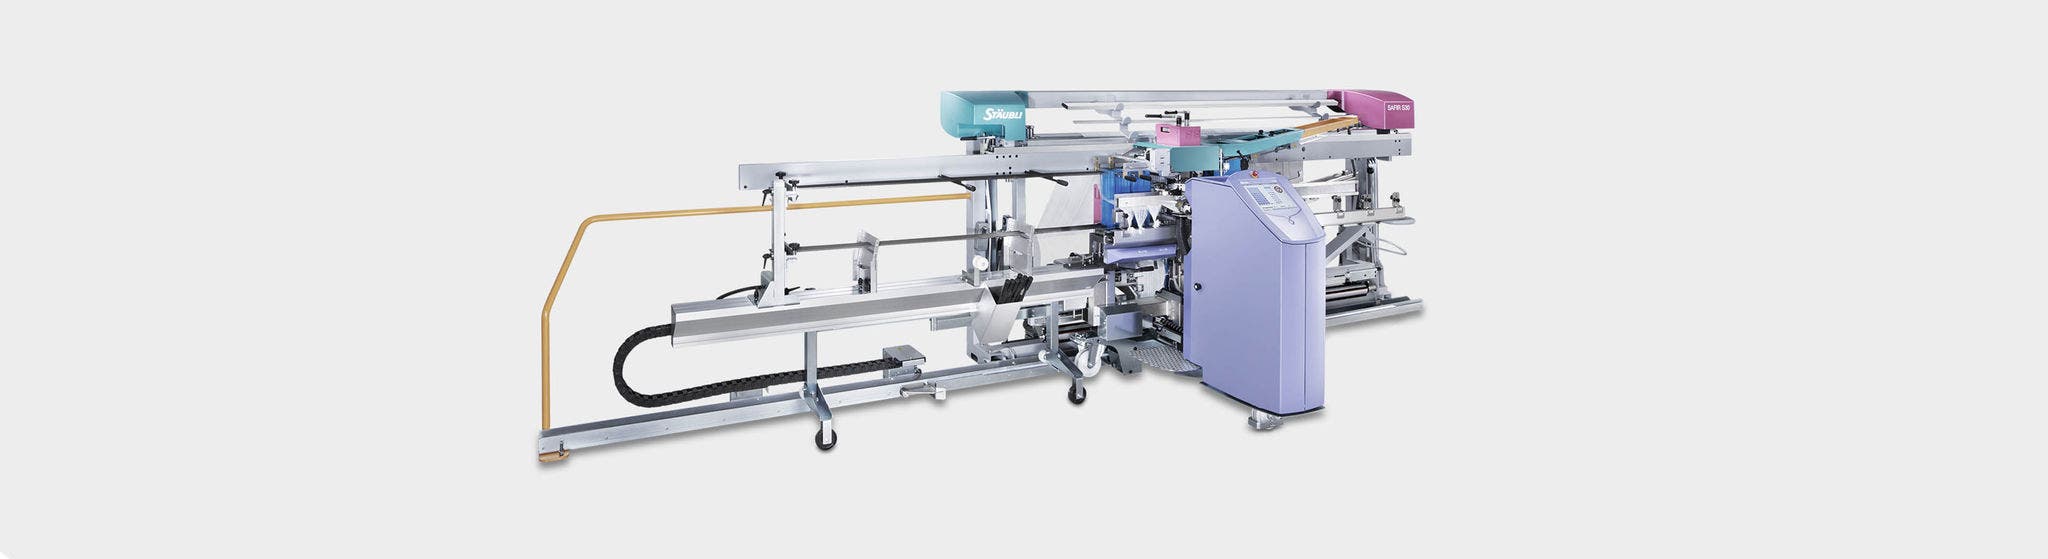 SAFIR S32 taharlama makinesi 8, 12 veya 16 gücü taşıma çubuklarıyla, lamel testereleri olmadan, standart tekstil veya filament üreten dokuma fabrikalarının ihtiyaçlarını karşılar.